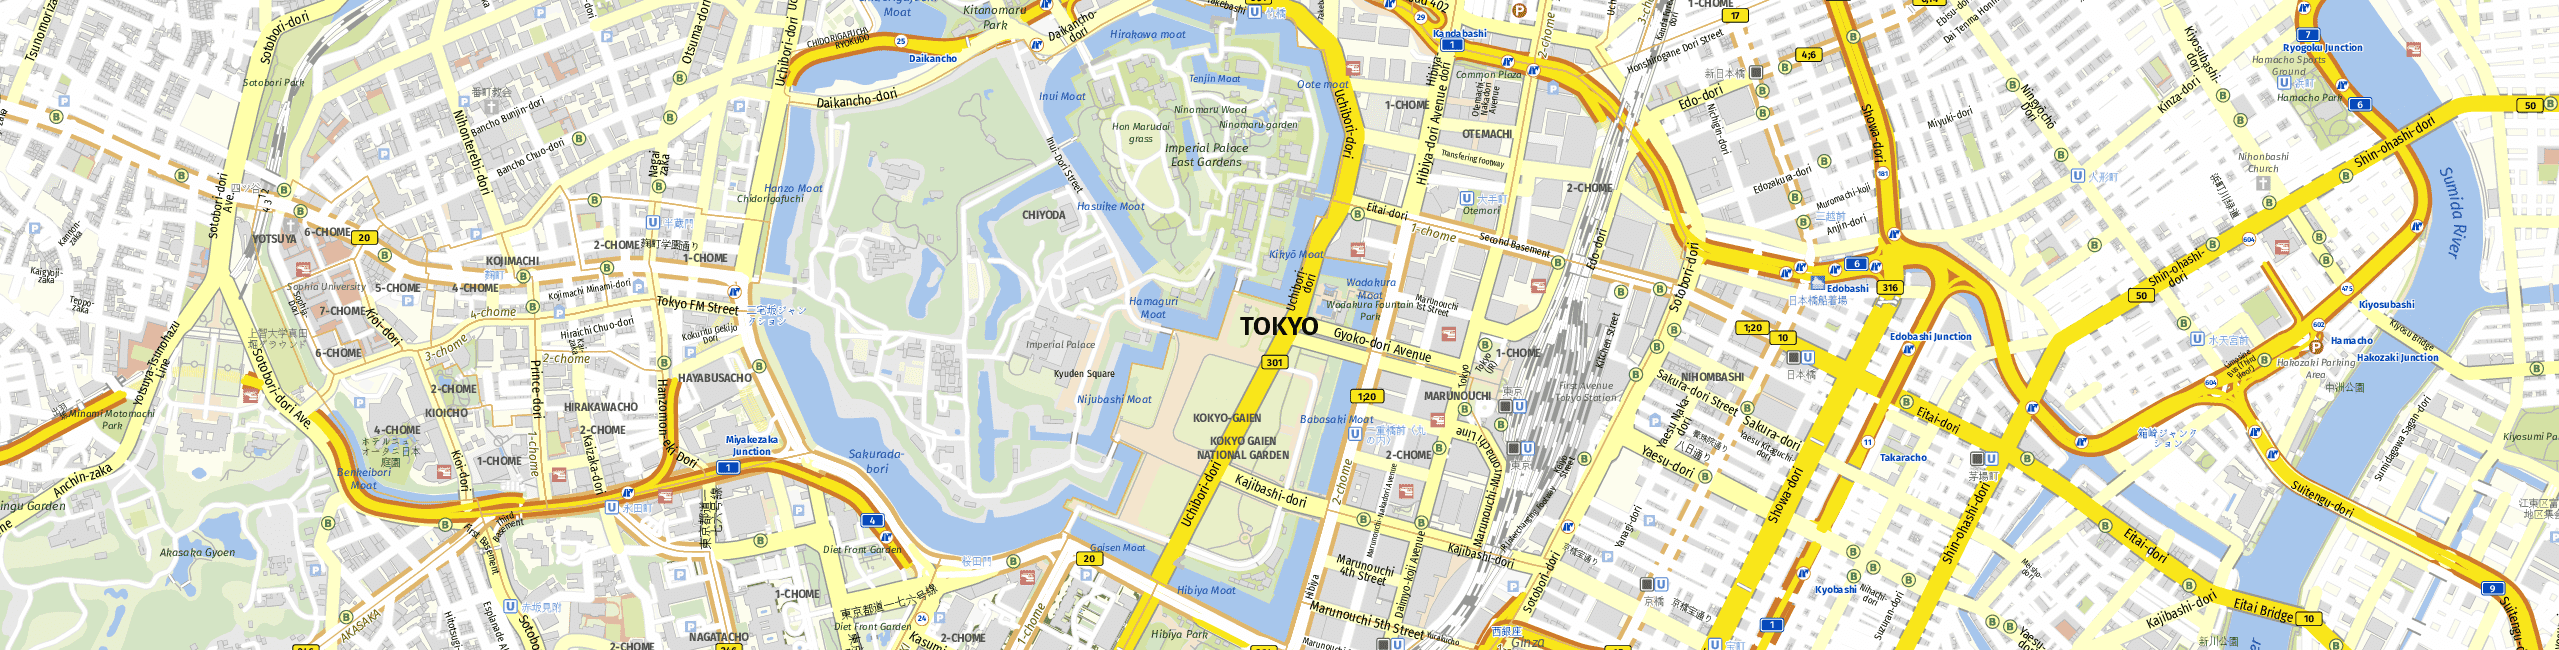 Stadtplan Tokio zum Downloaden.